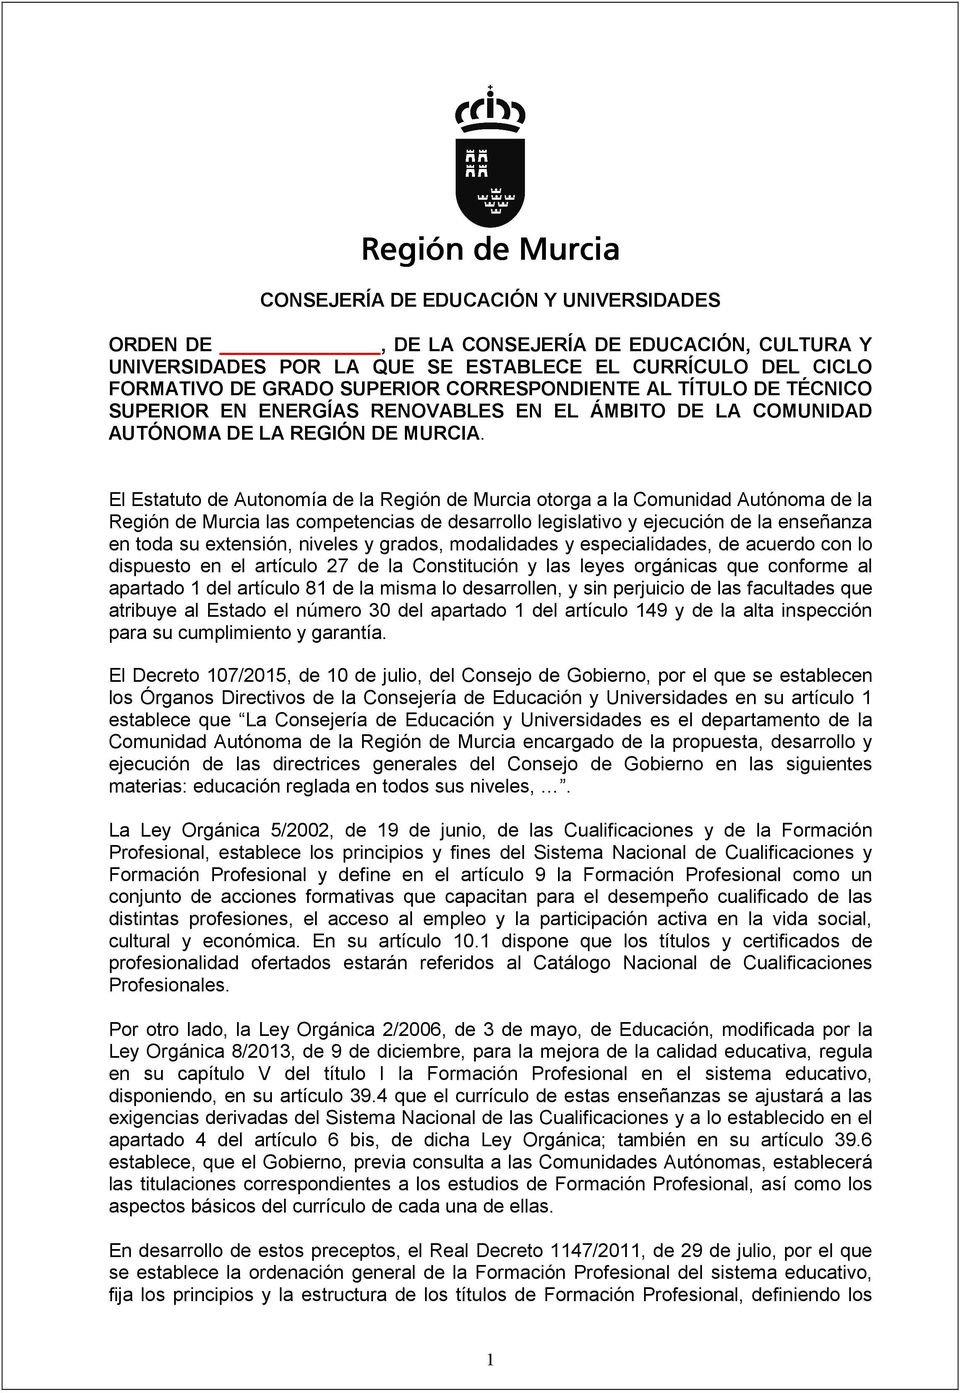 El Estatuto de Autonomía de la Región de Murcia otorga a la Comunidad Autónoma de la Región de Murcia las competencias de desarrollo legislativo y ejecución de la enseñanza en toda su extensión,